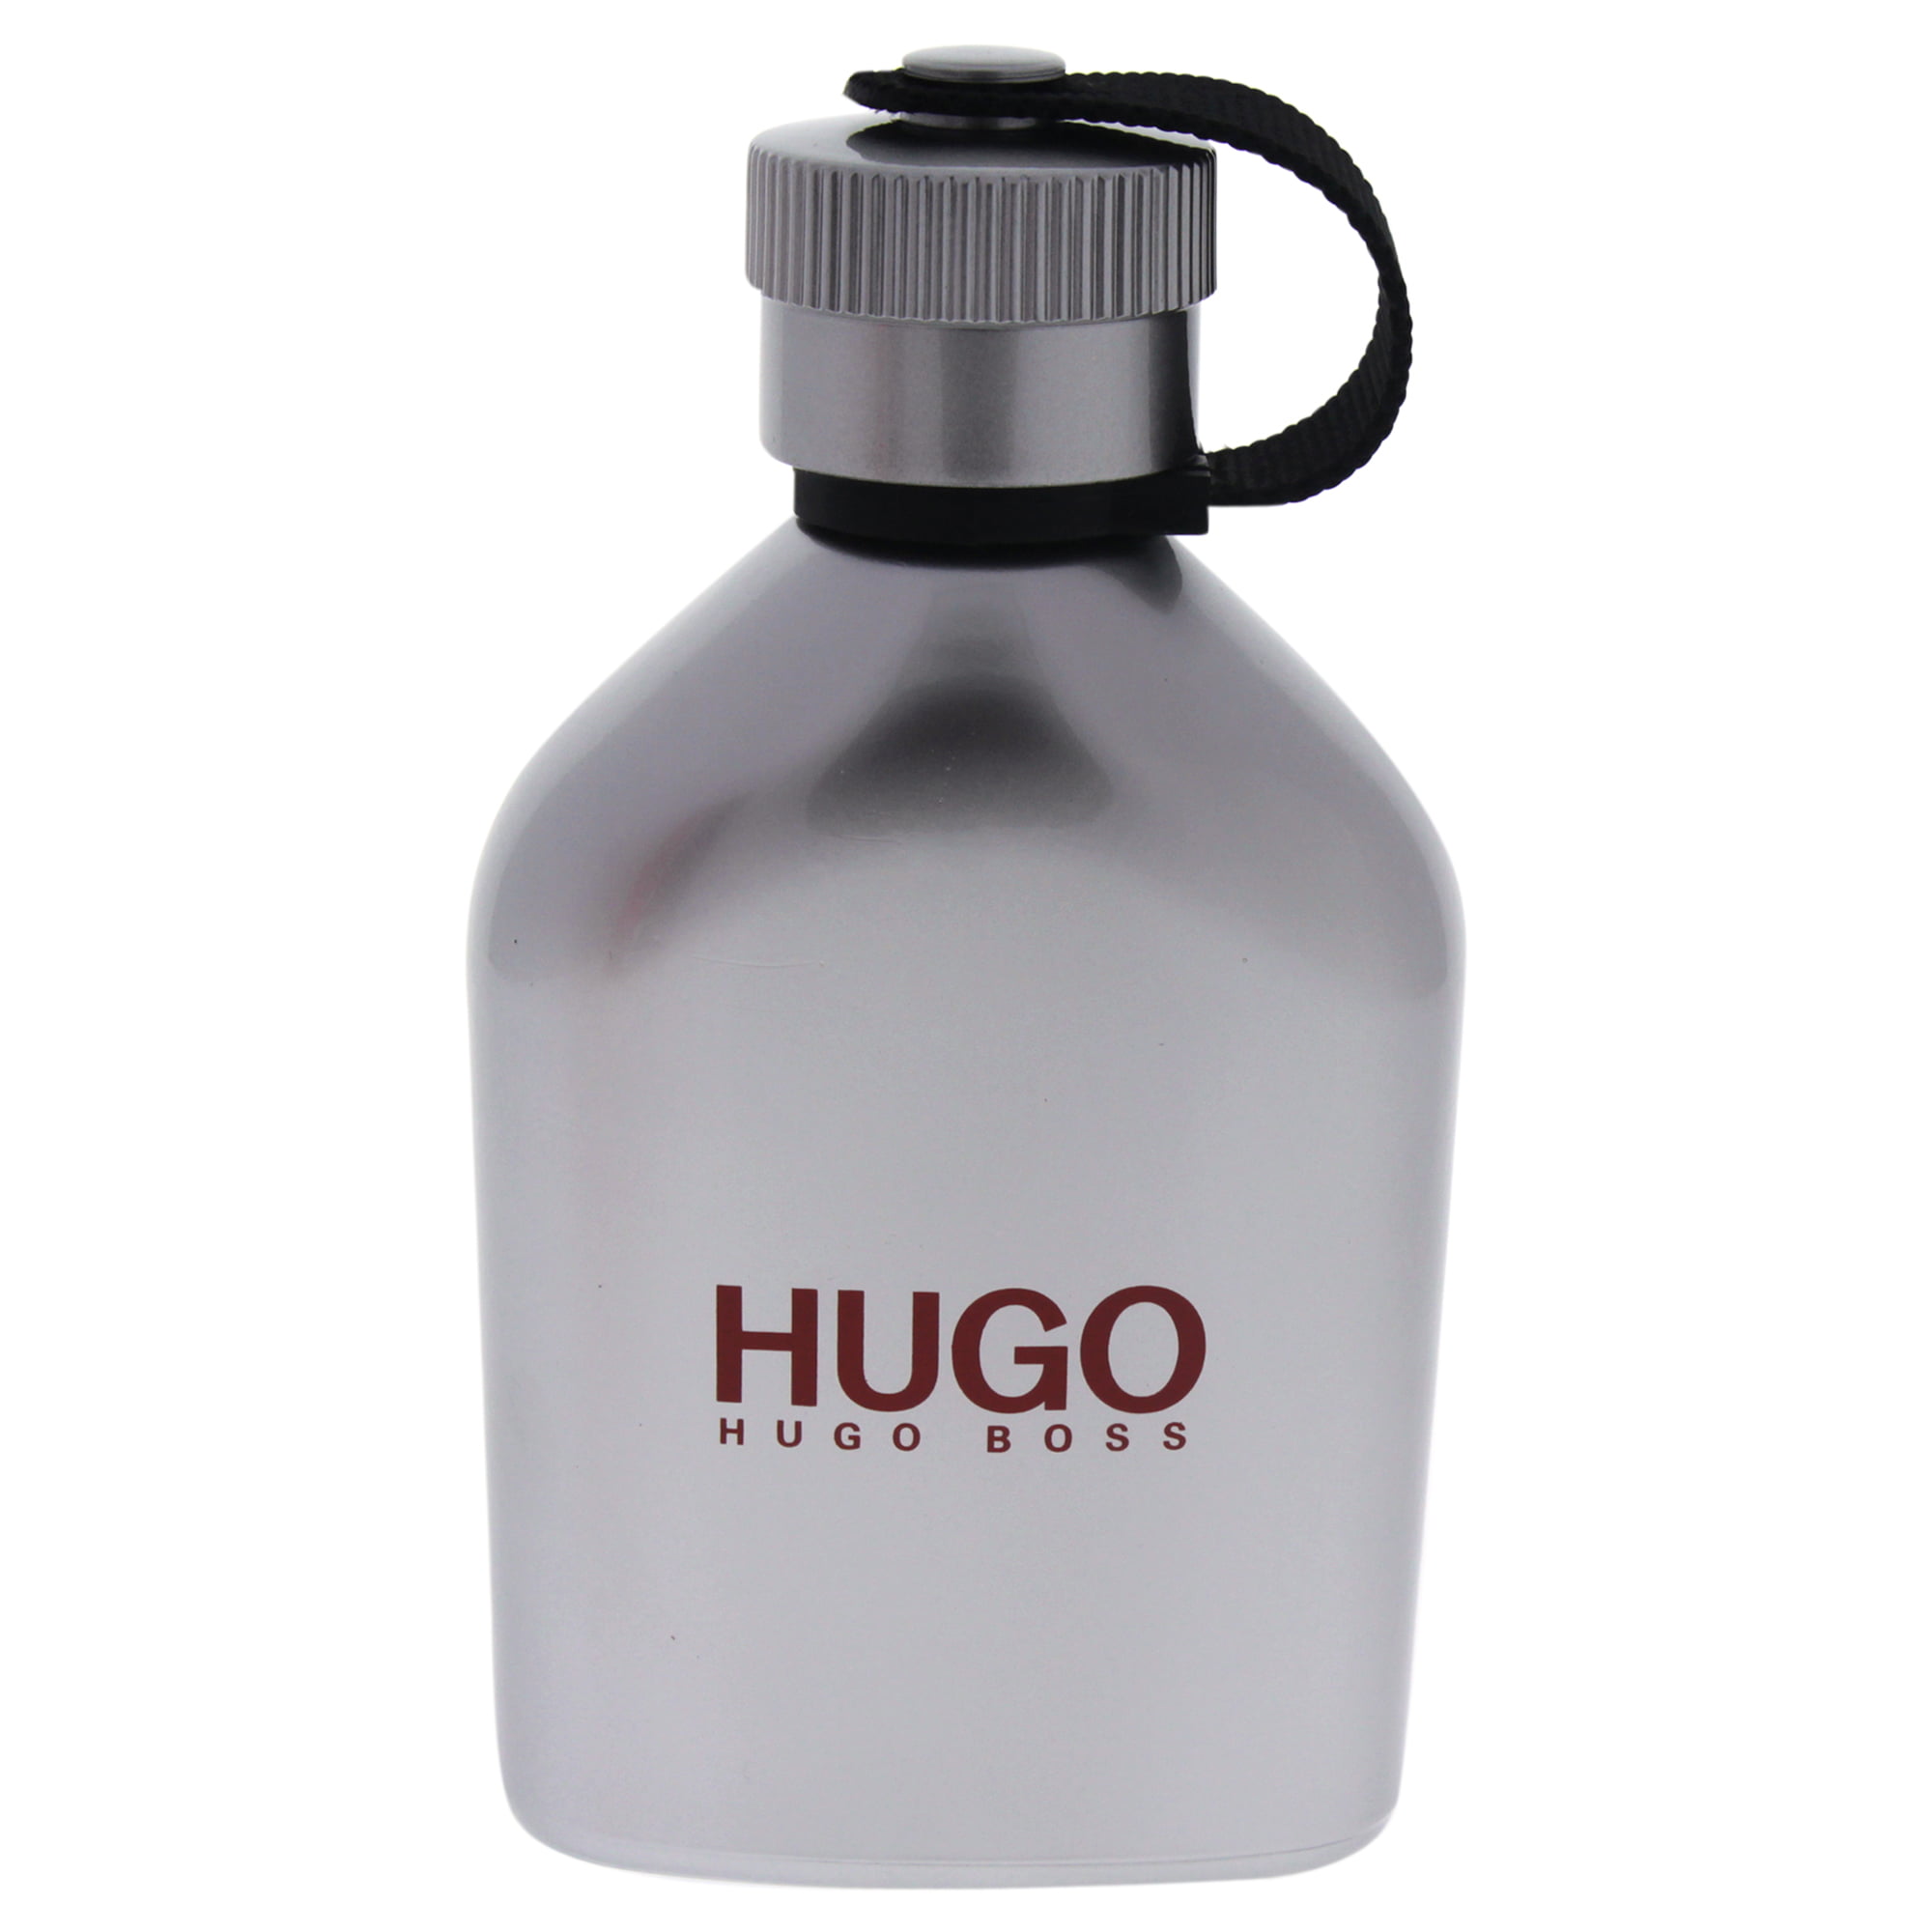 Hugo Boss - HUGO BOSS Hugo Iced Eau de Toilette, Cologne for Men, 4.2 ...